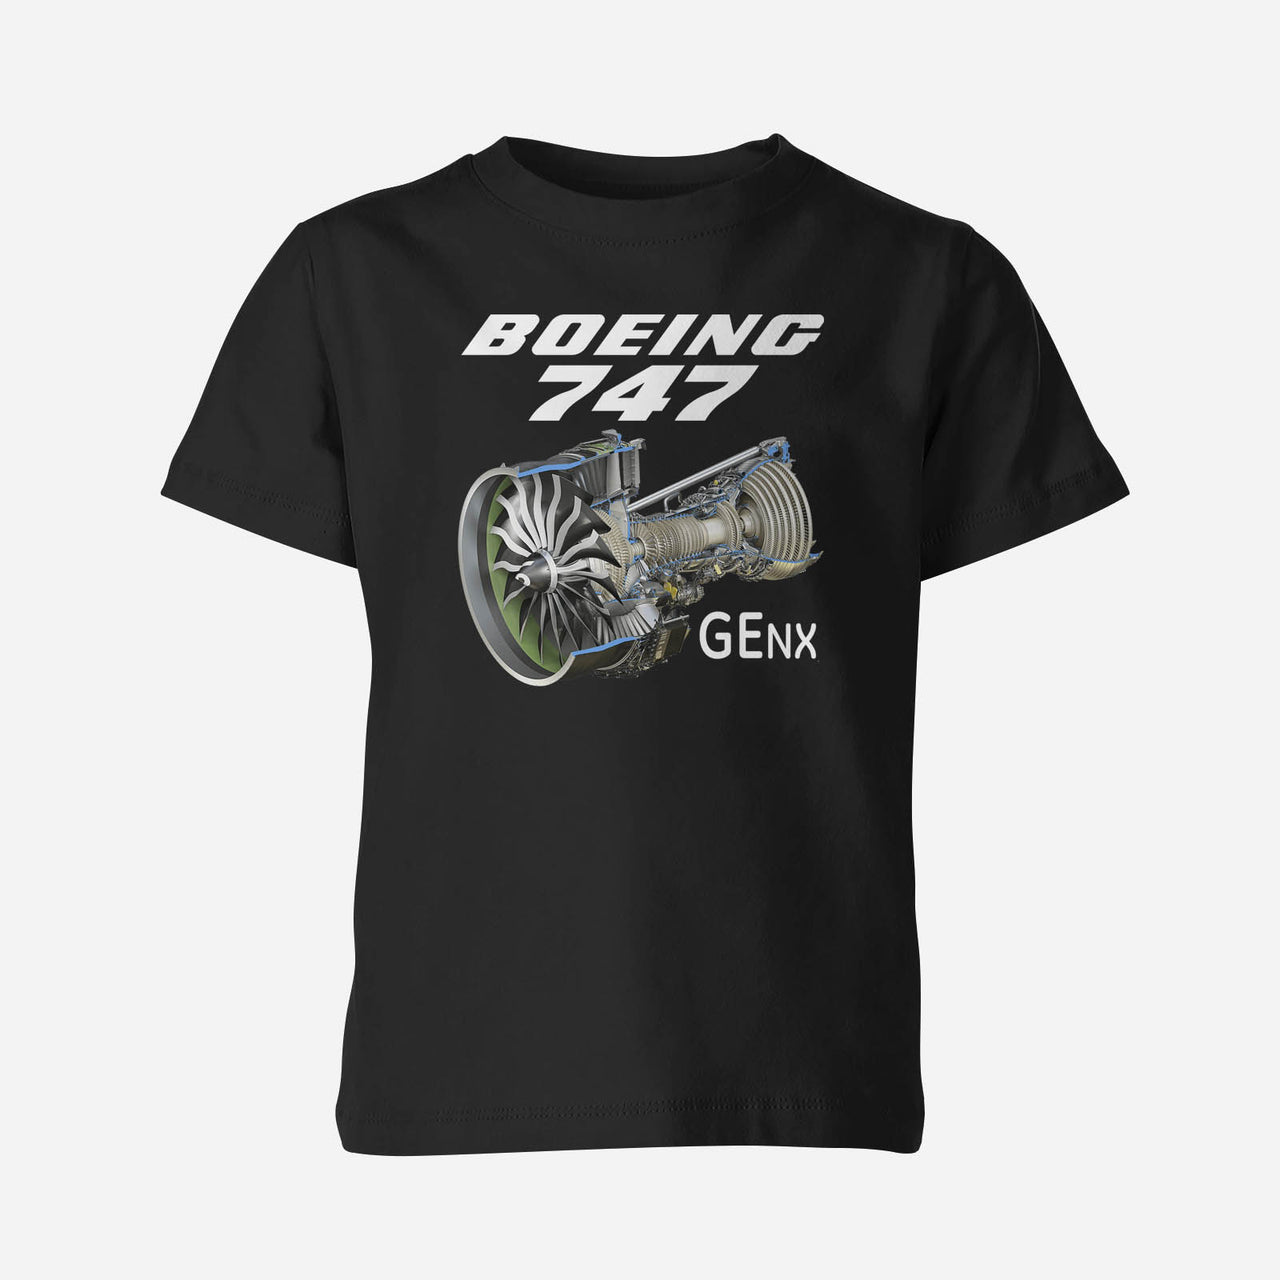 Boeing 747 & GENX Engine Designed Children T-Shirts